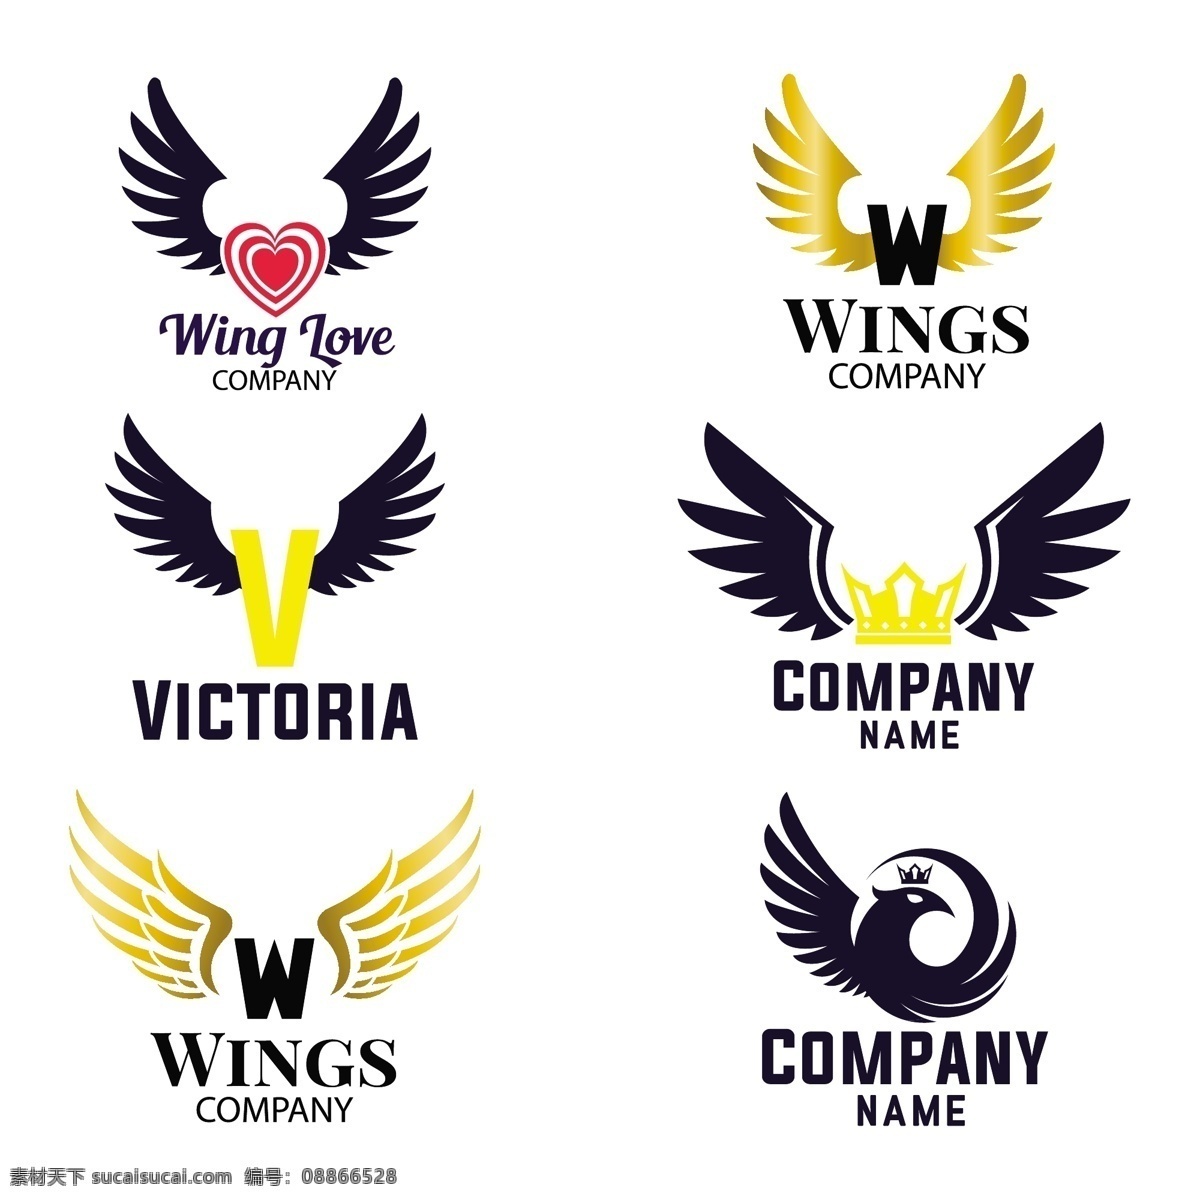 翅膀 logo 扁平化 平面 矢量 鸟 标志 蓝色 金色 爱心 公司